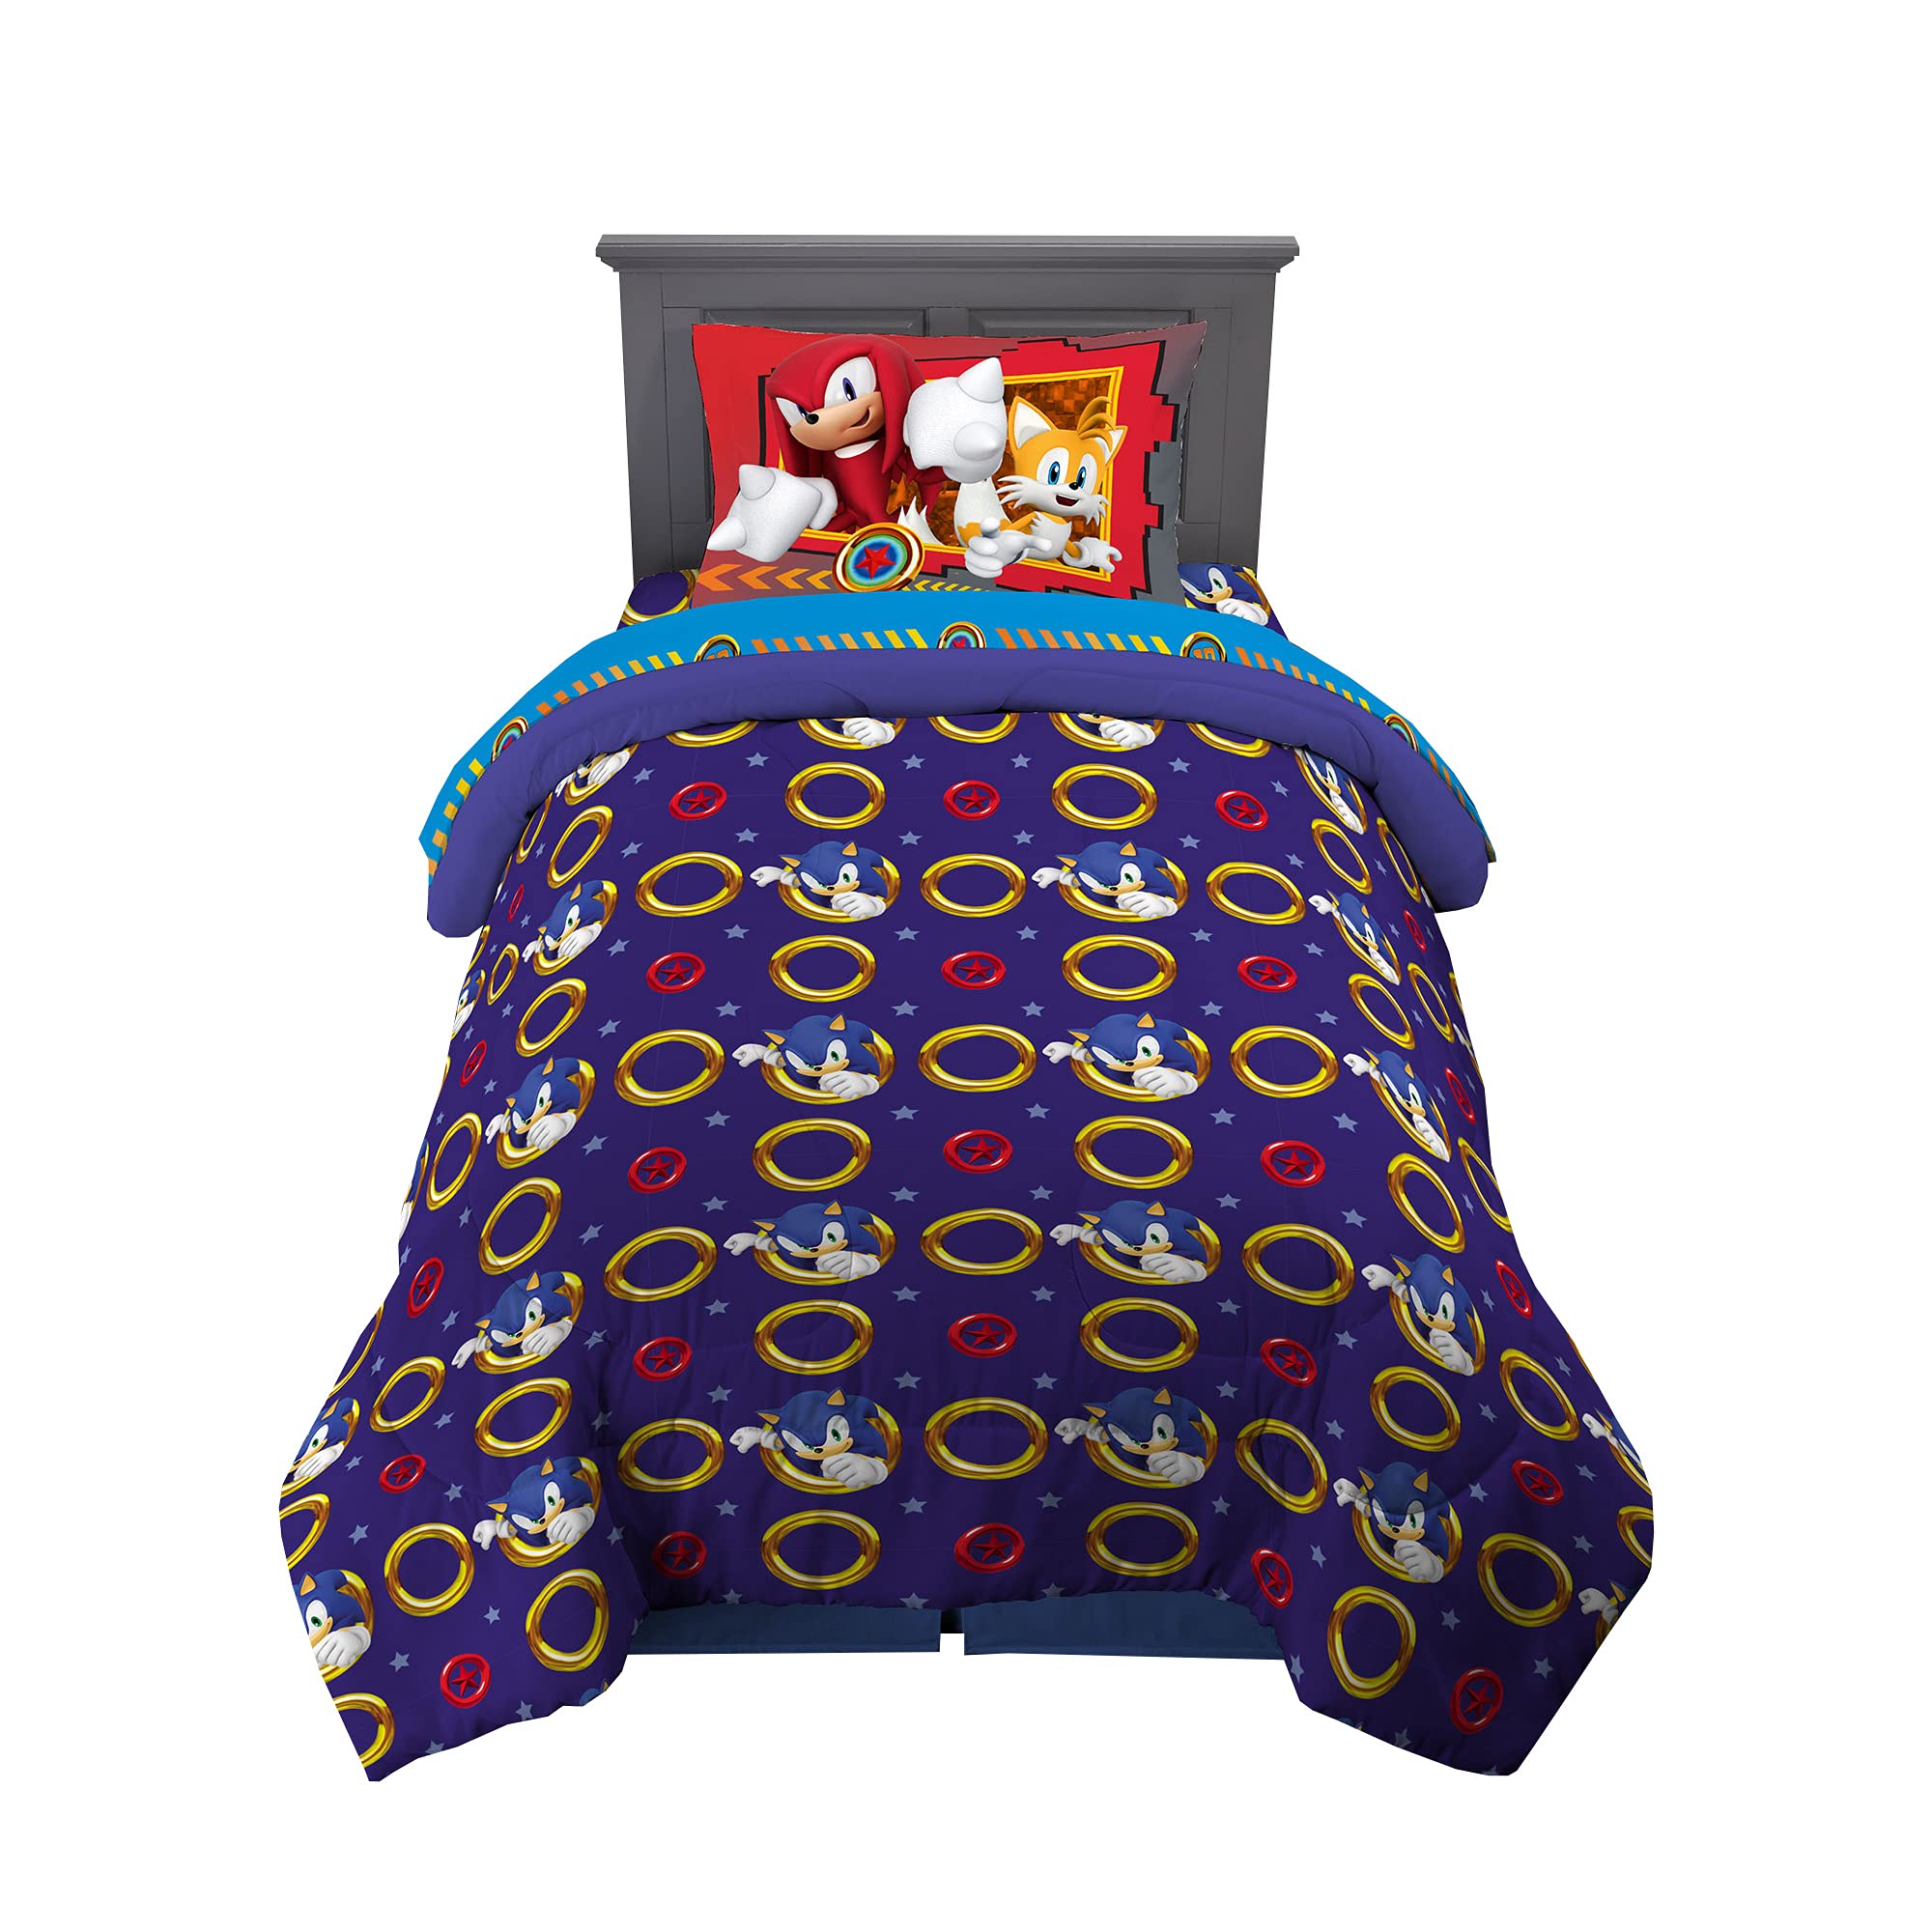 Franco Kids Bedding Super Soft Microfiber Reversible Pillowcase, 20 in x 30 in, Pokemon